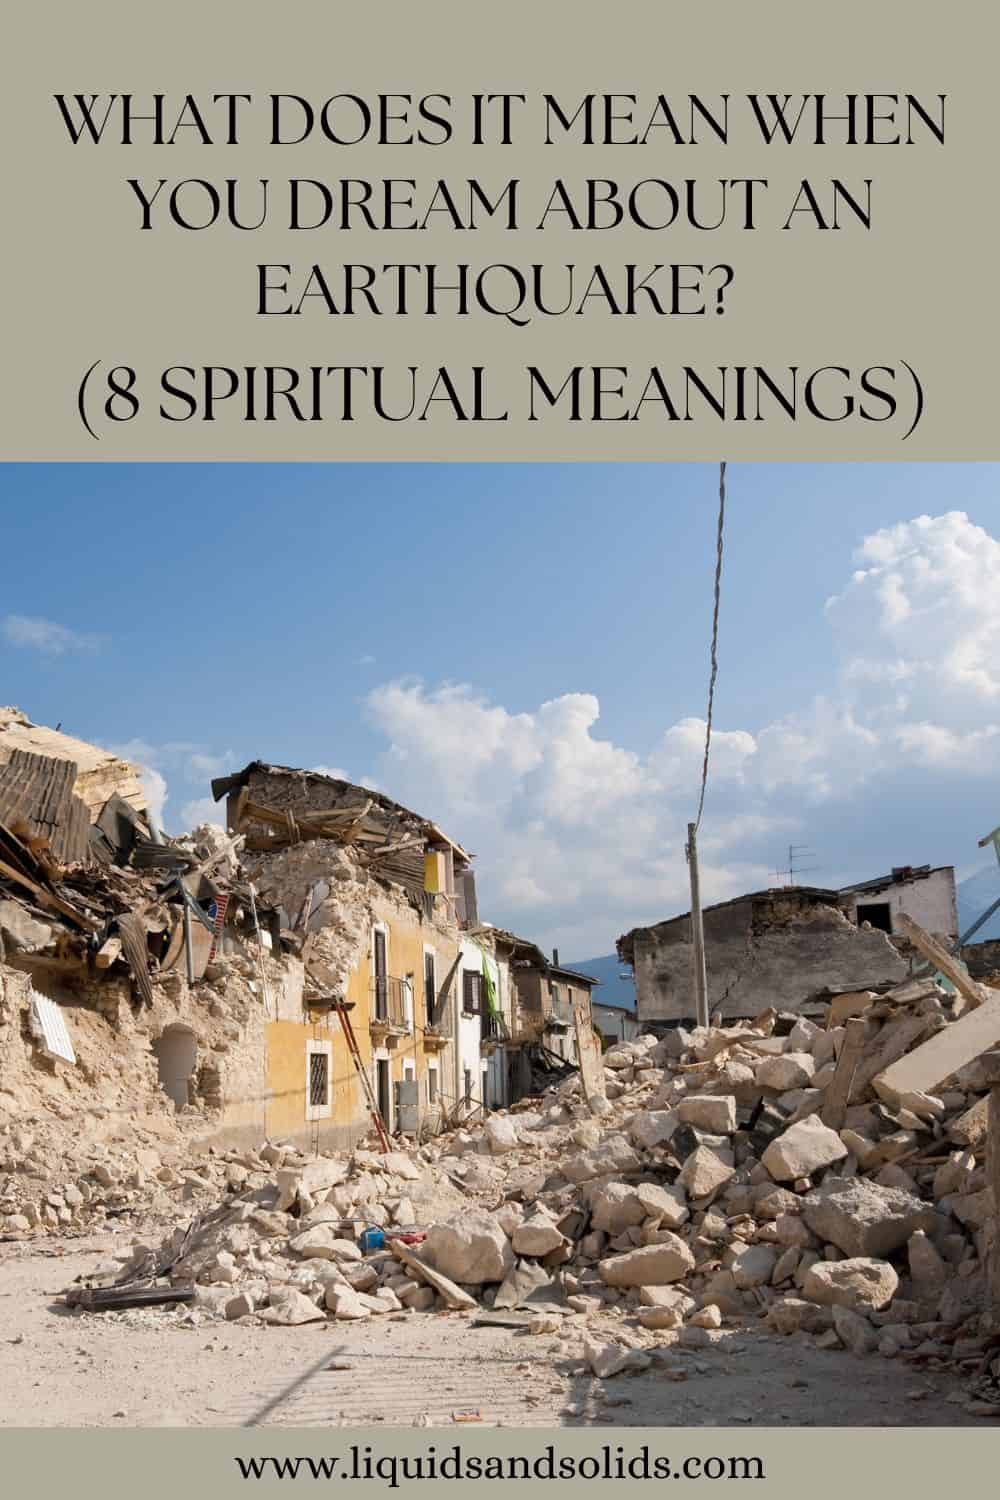  Mit jelent, ha földrengésről álmodsz? (8 spirituális jelentés)